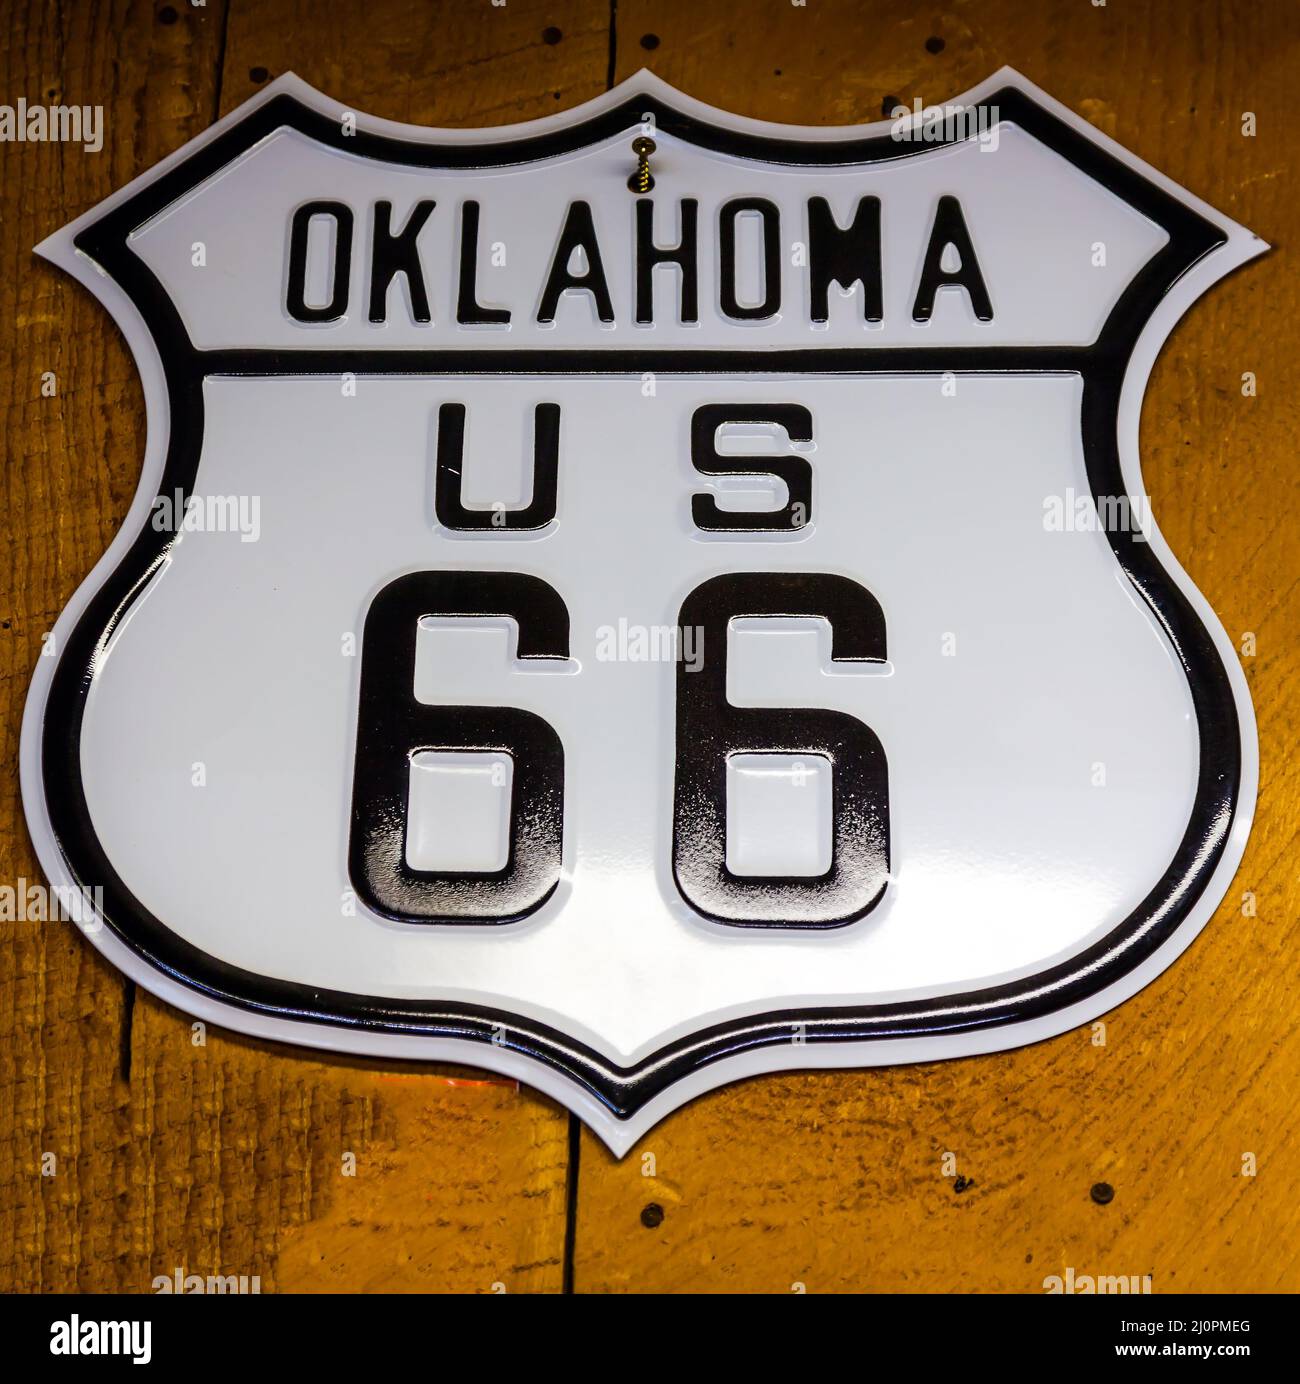 The road sign OKLAHOMA US 66 Stock Photo